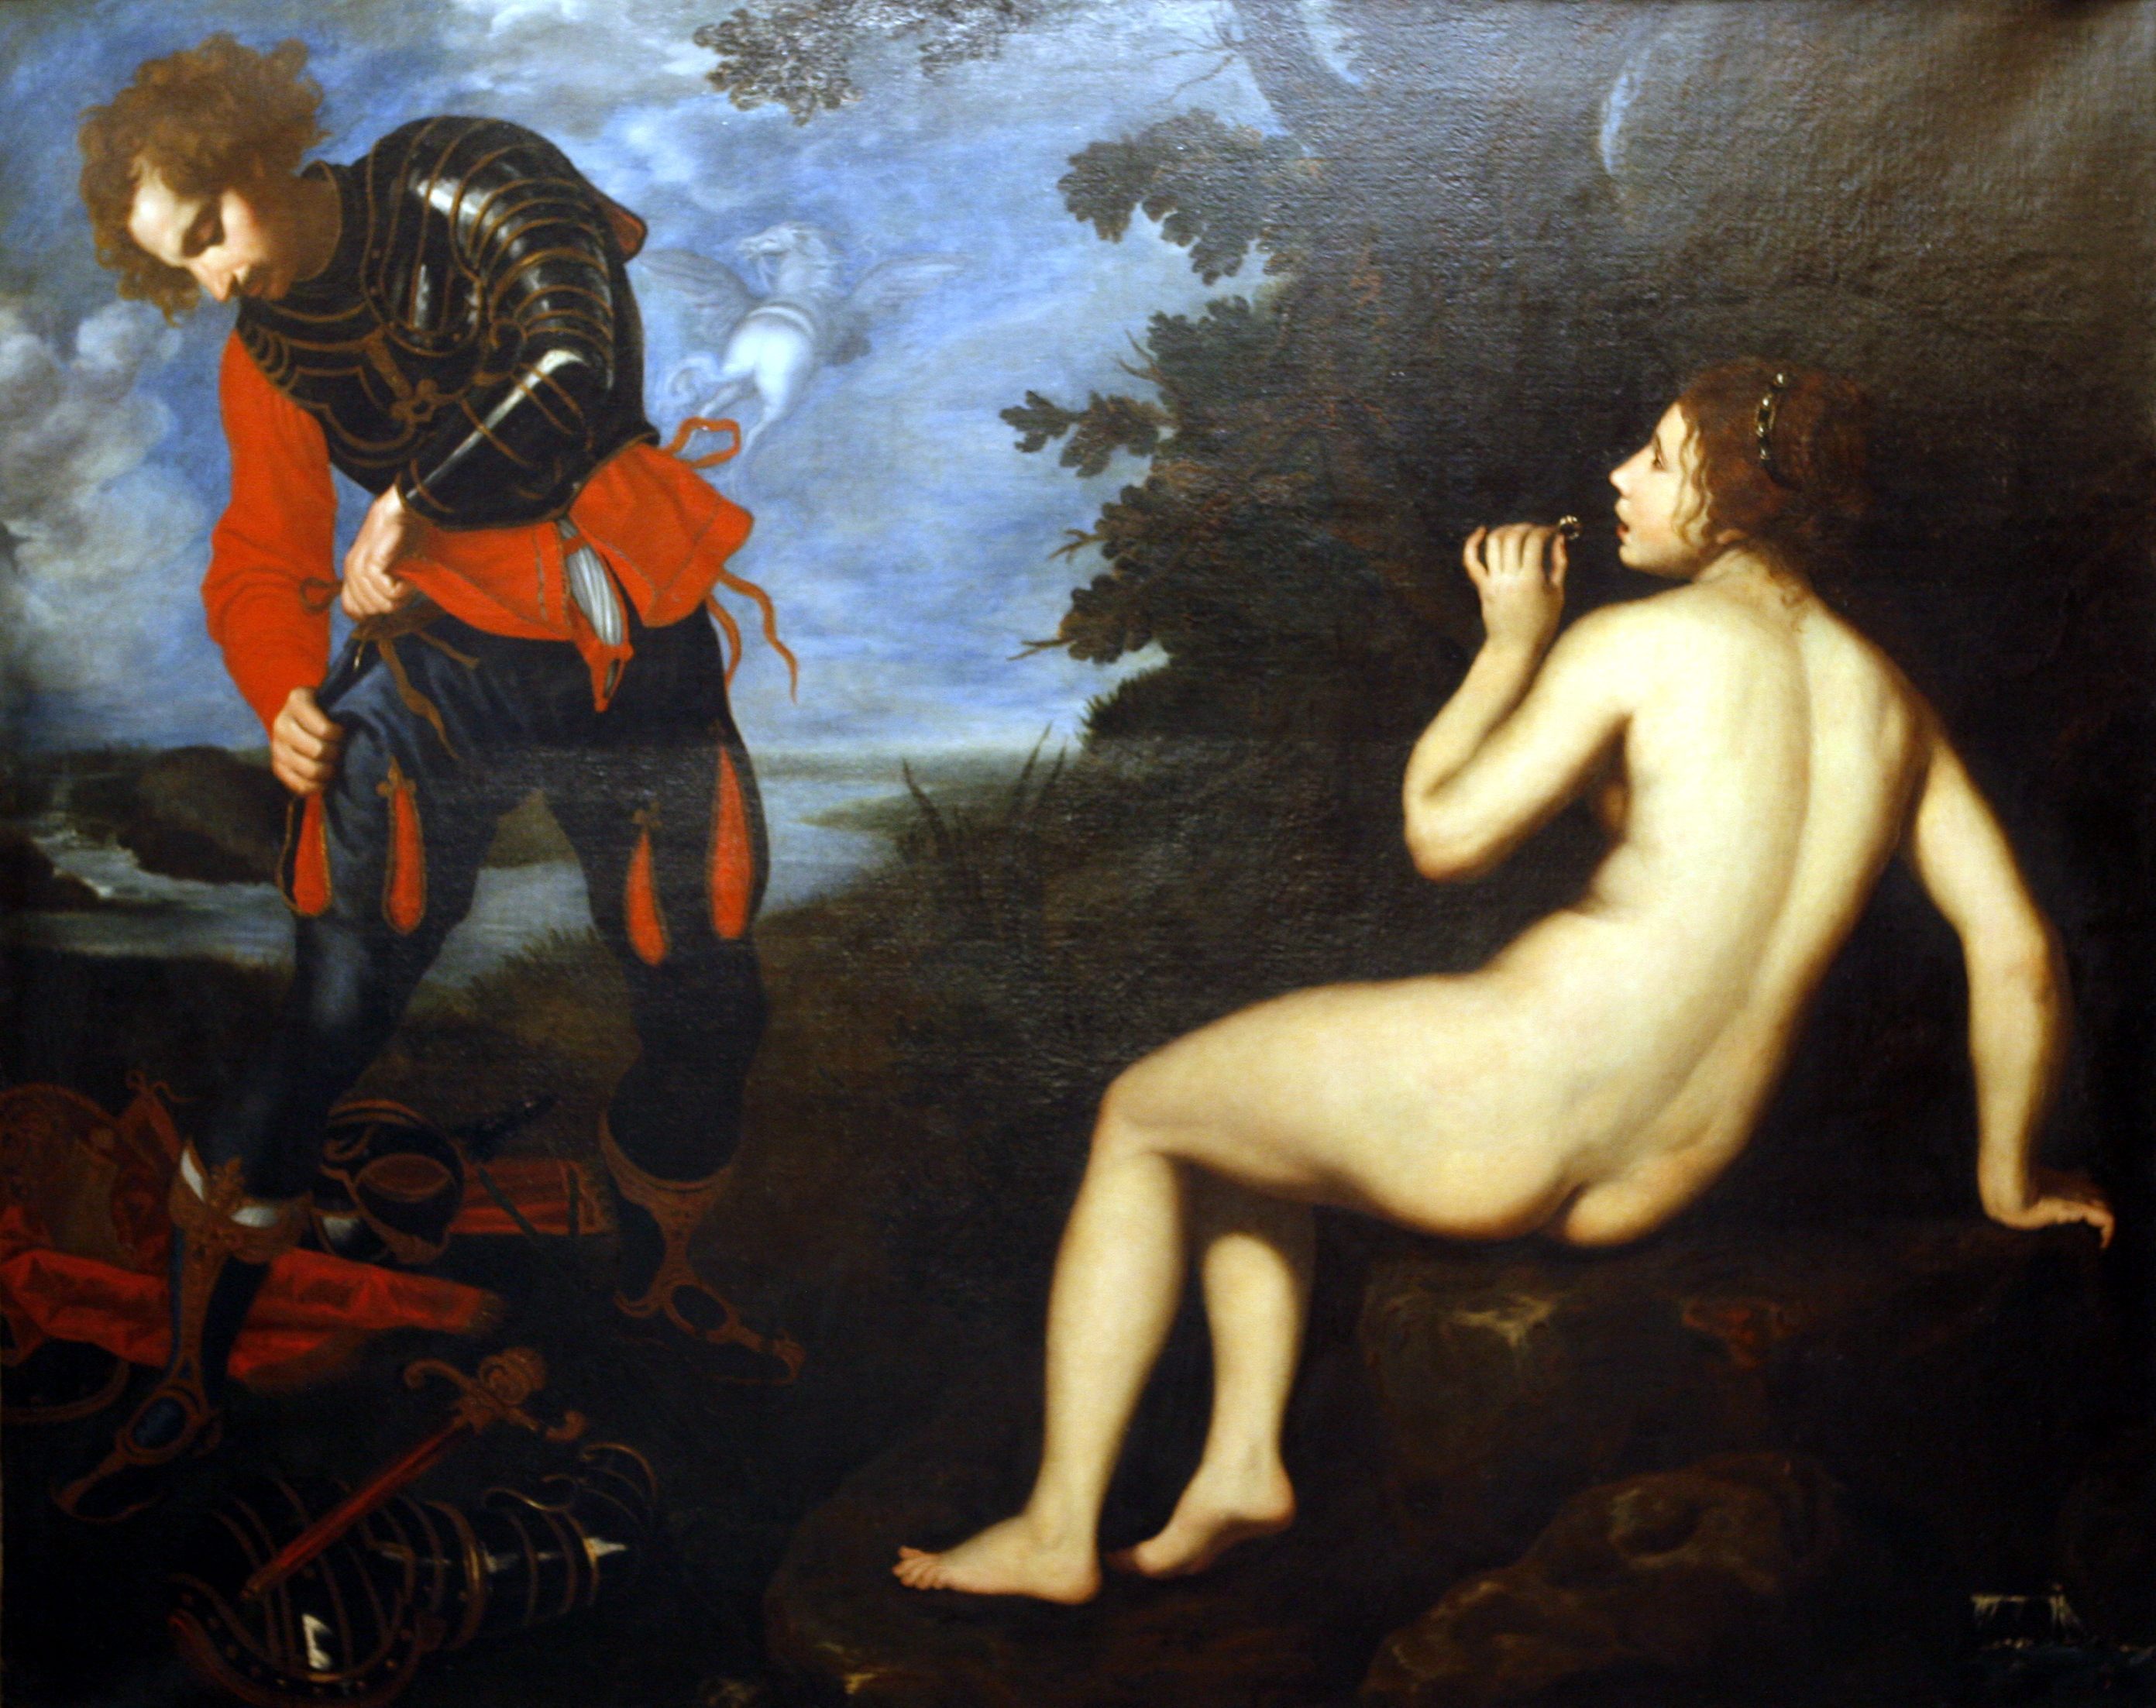 Roger and Angelica by Giovanni Biliverti - Ca. 1630 - 174 x 216 cm Musée des Beaux-Arts de Dijon